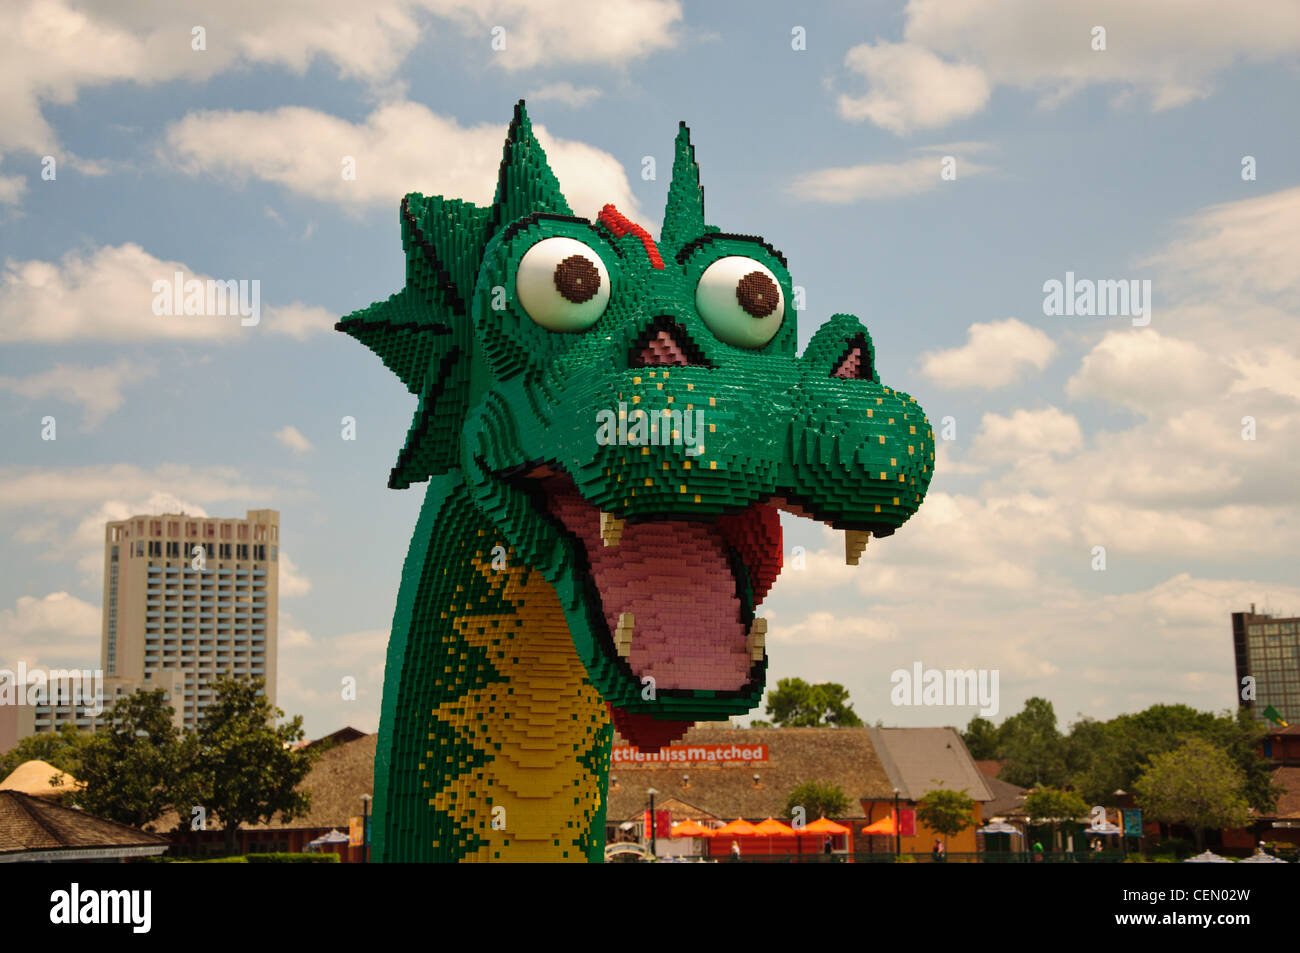 walt disney world resort parks downtown disney lego dragon Stock Photo -  Alamy